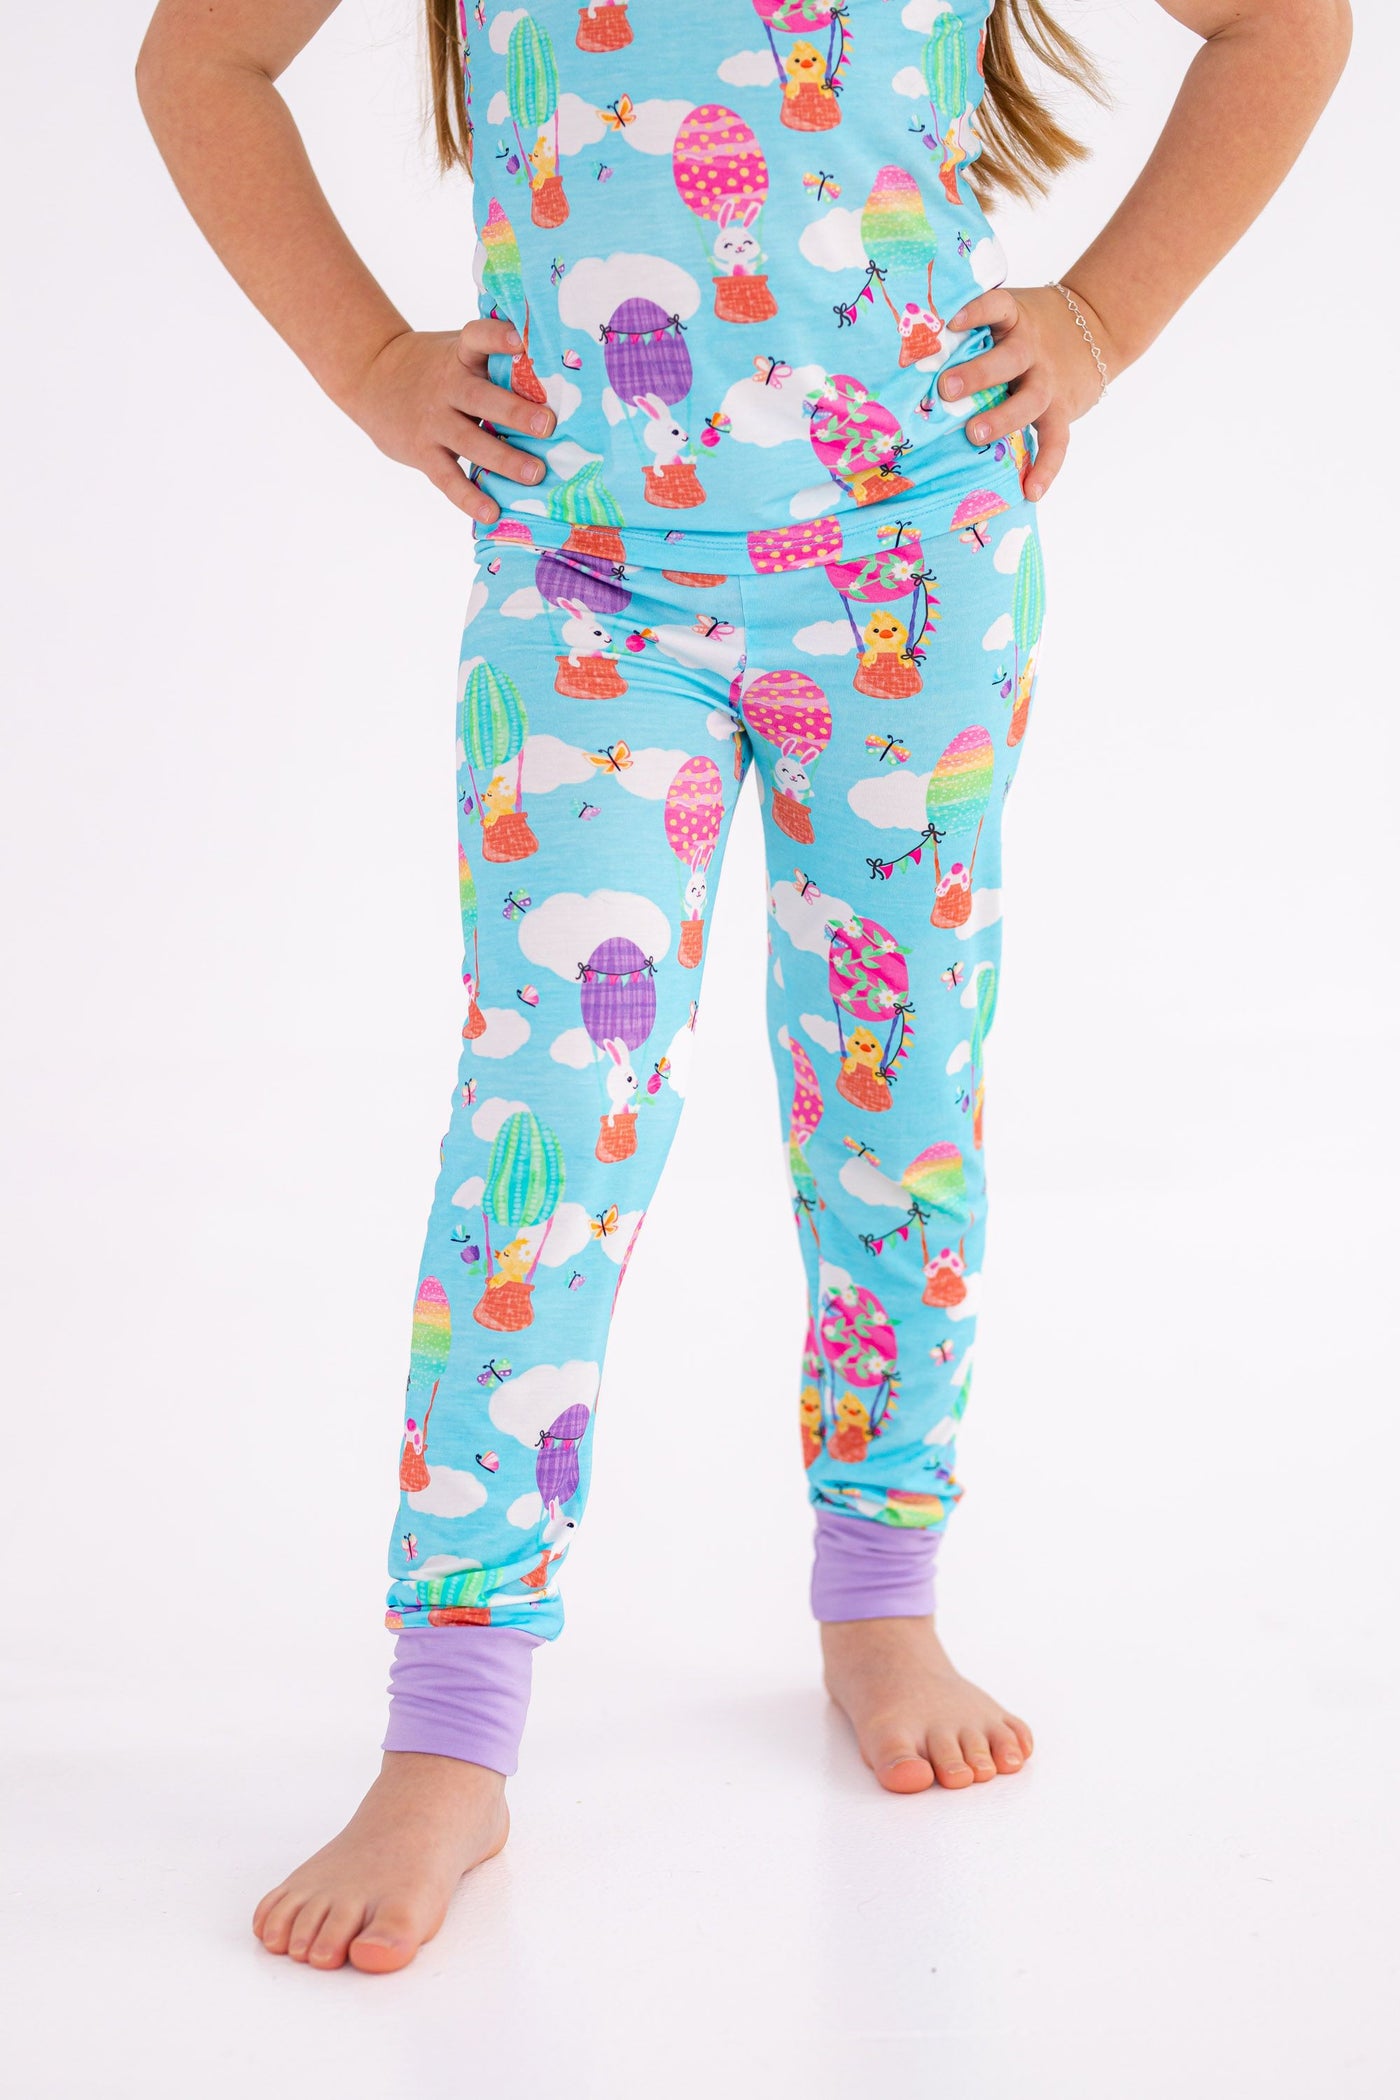 Birdie Bean 2-piece Pajama Set: Lola